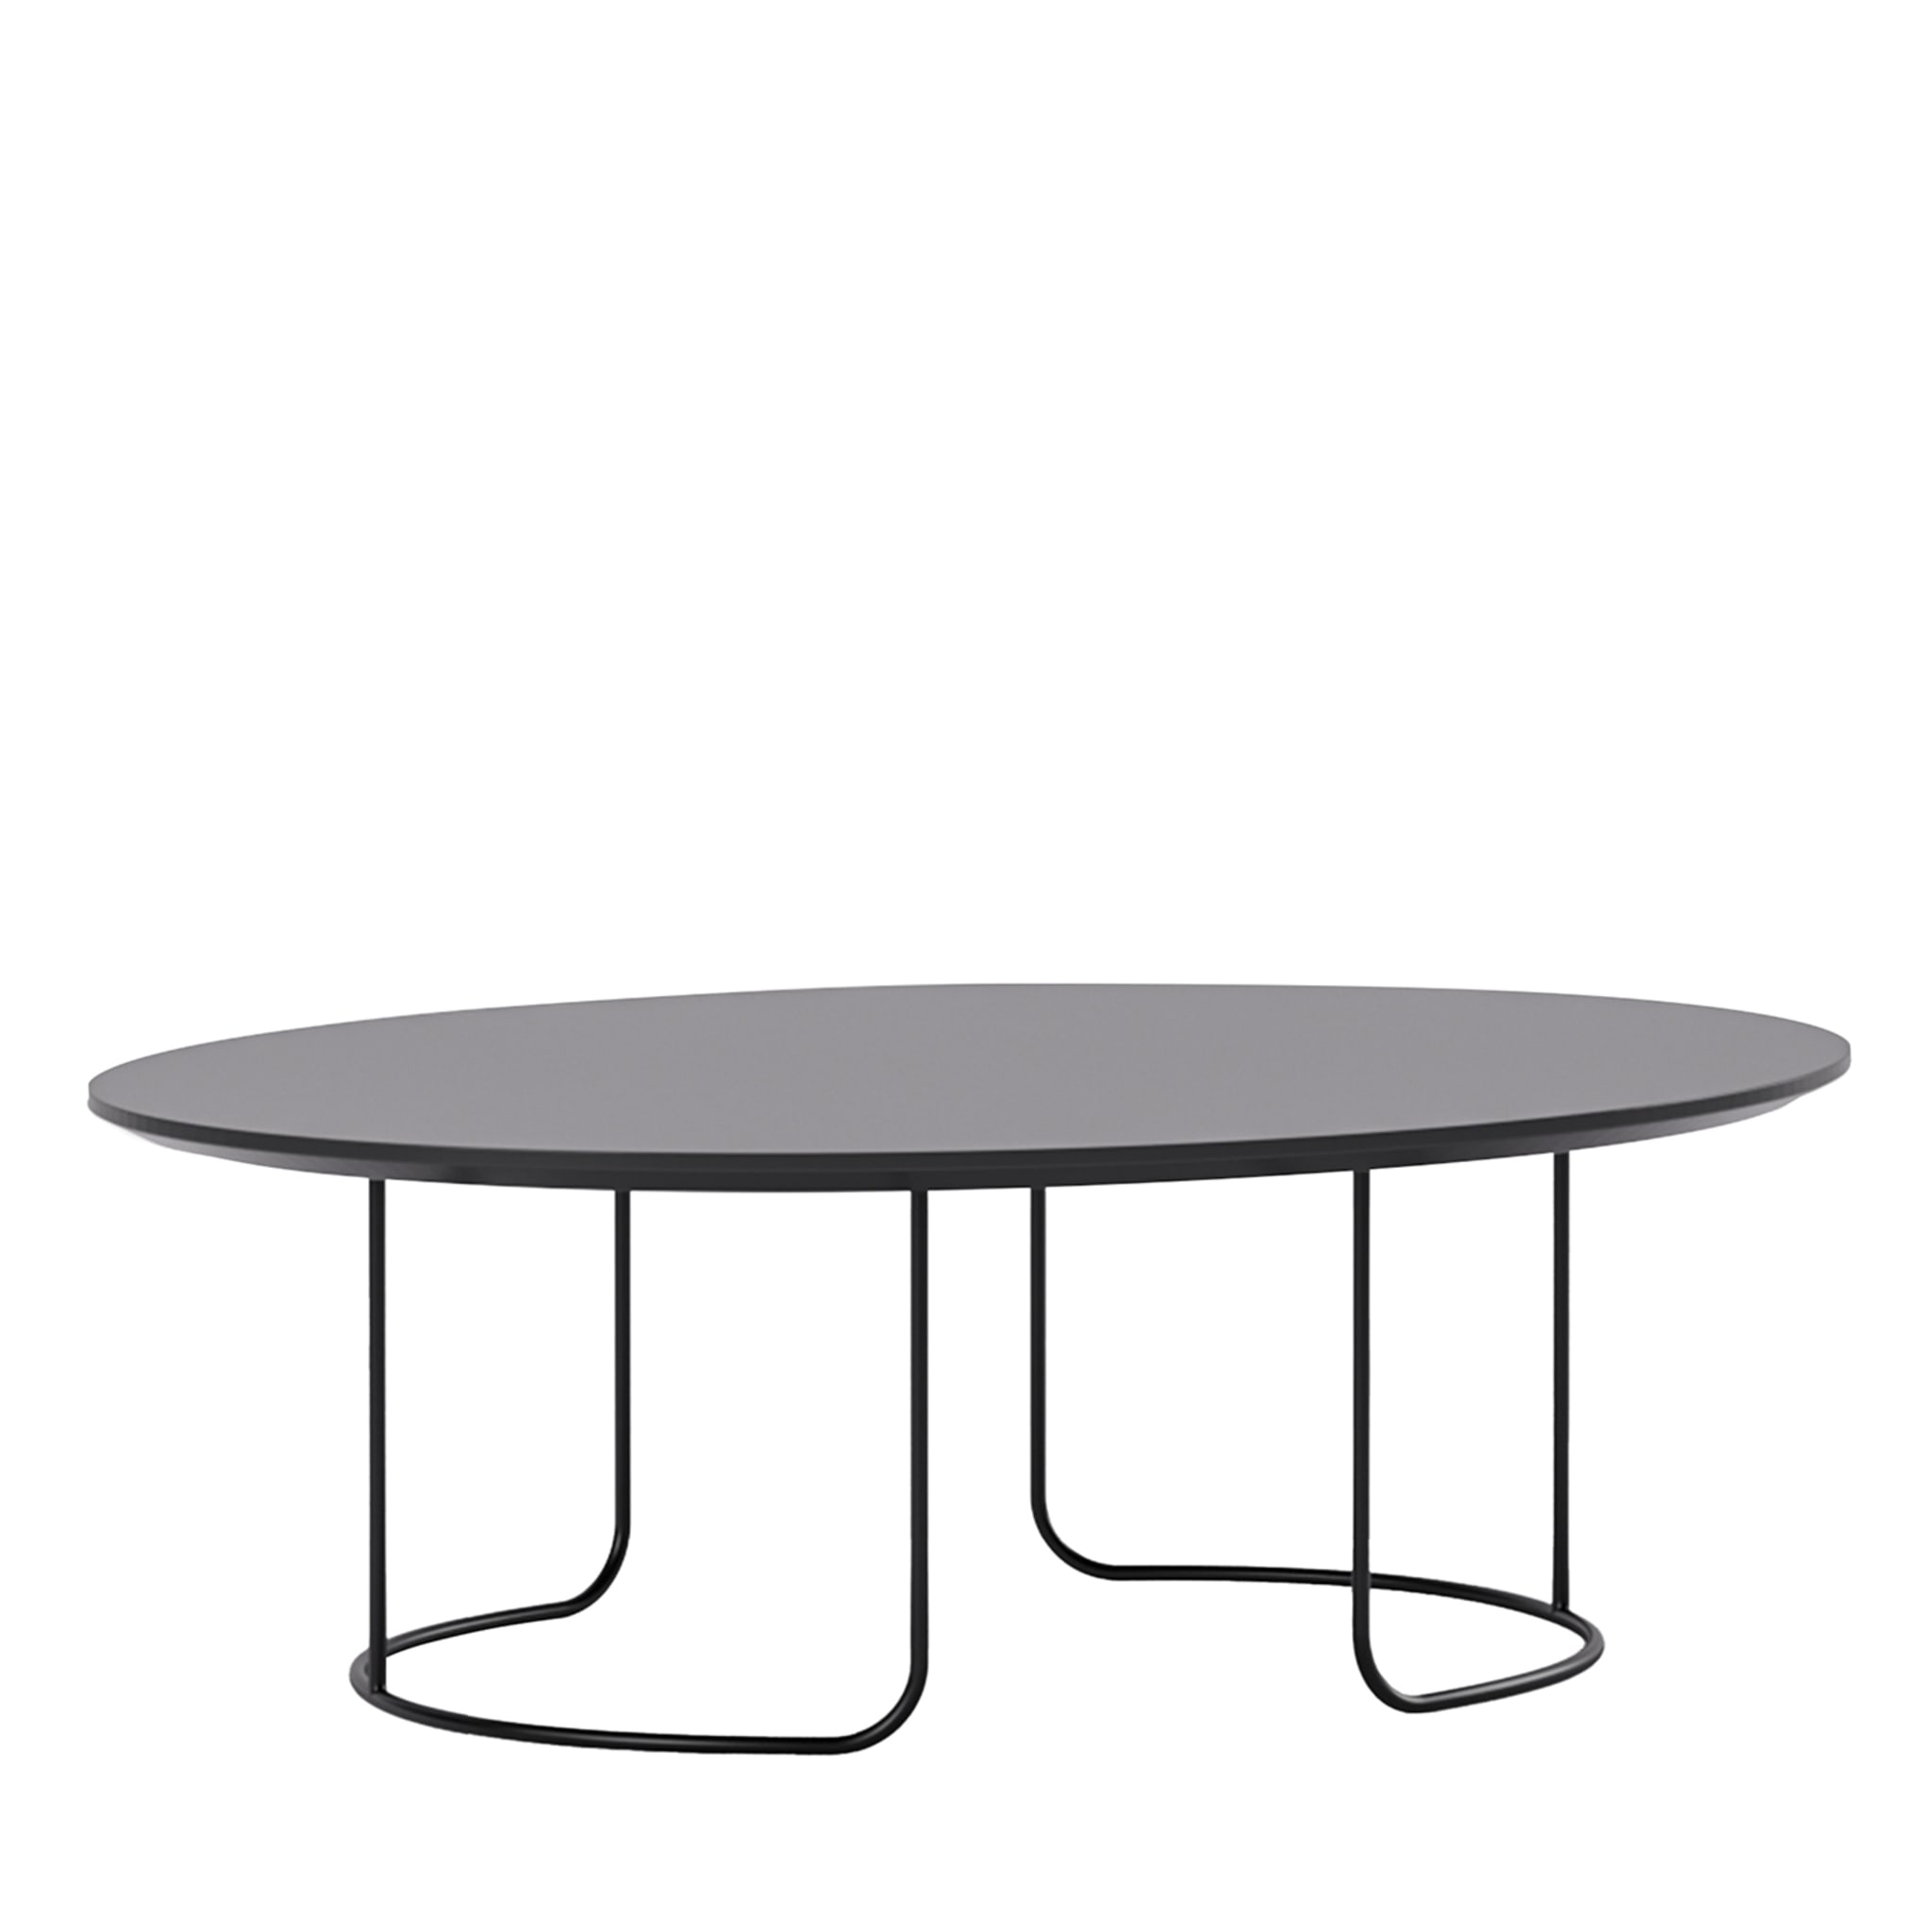 Table basse ovale gris mat Scala par Marco Piva - Vue principale